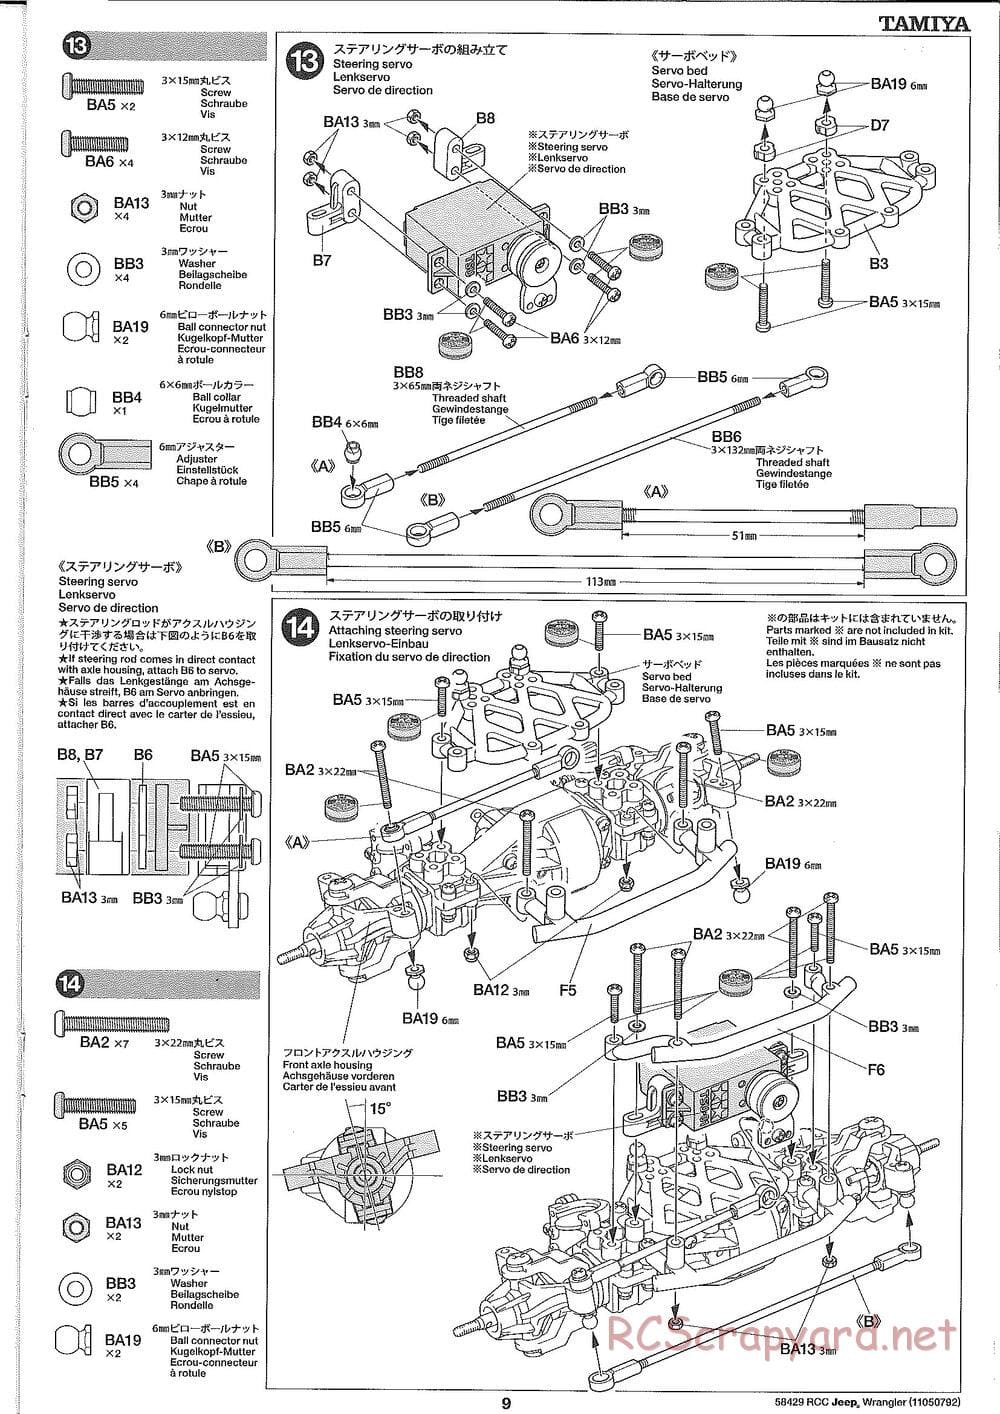 Tamiya - Jeep Wrangler - CR-01 Chassis - Manual - Page 9